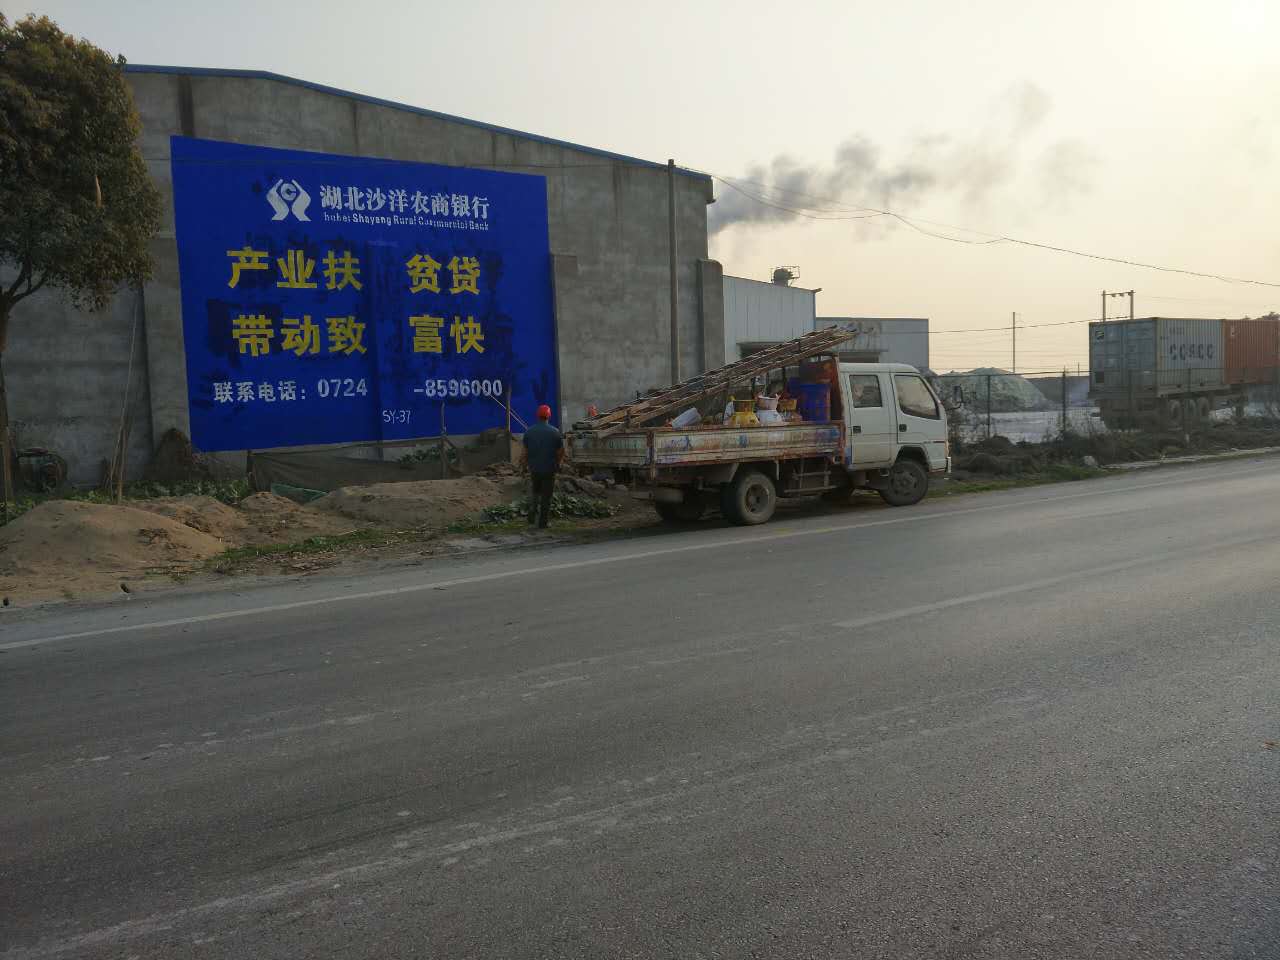 荆州本地户外墙体广告公司表现形式